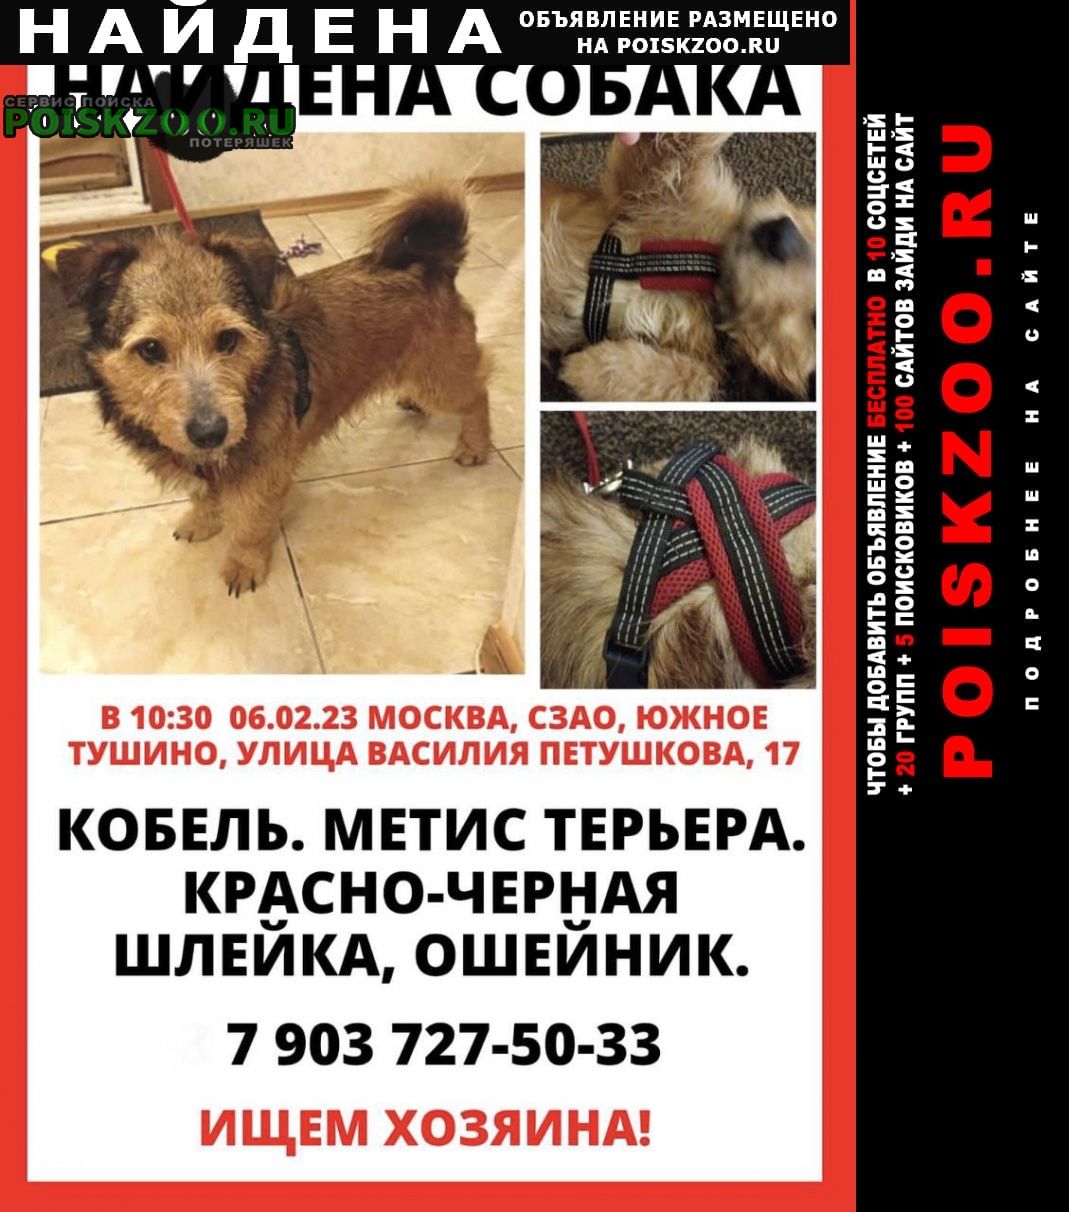 Найдена собака кобель, терьер, красная шлейка Москва